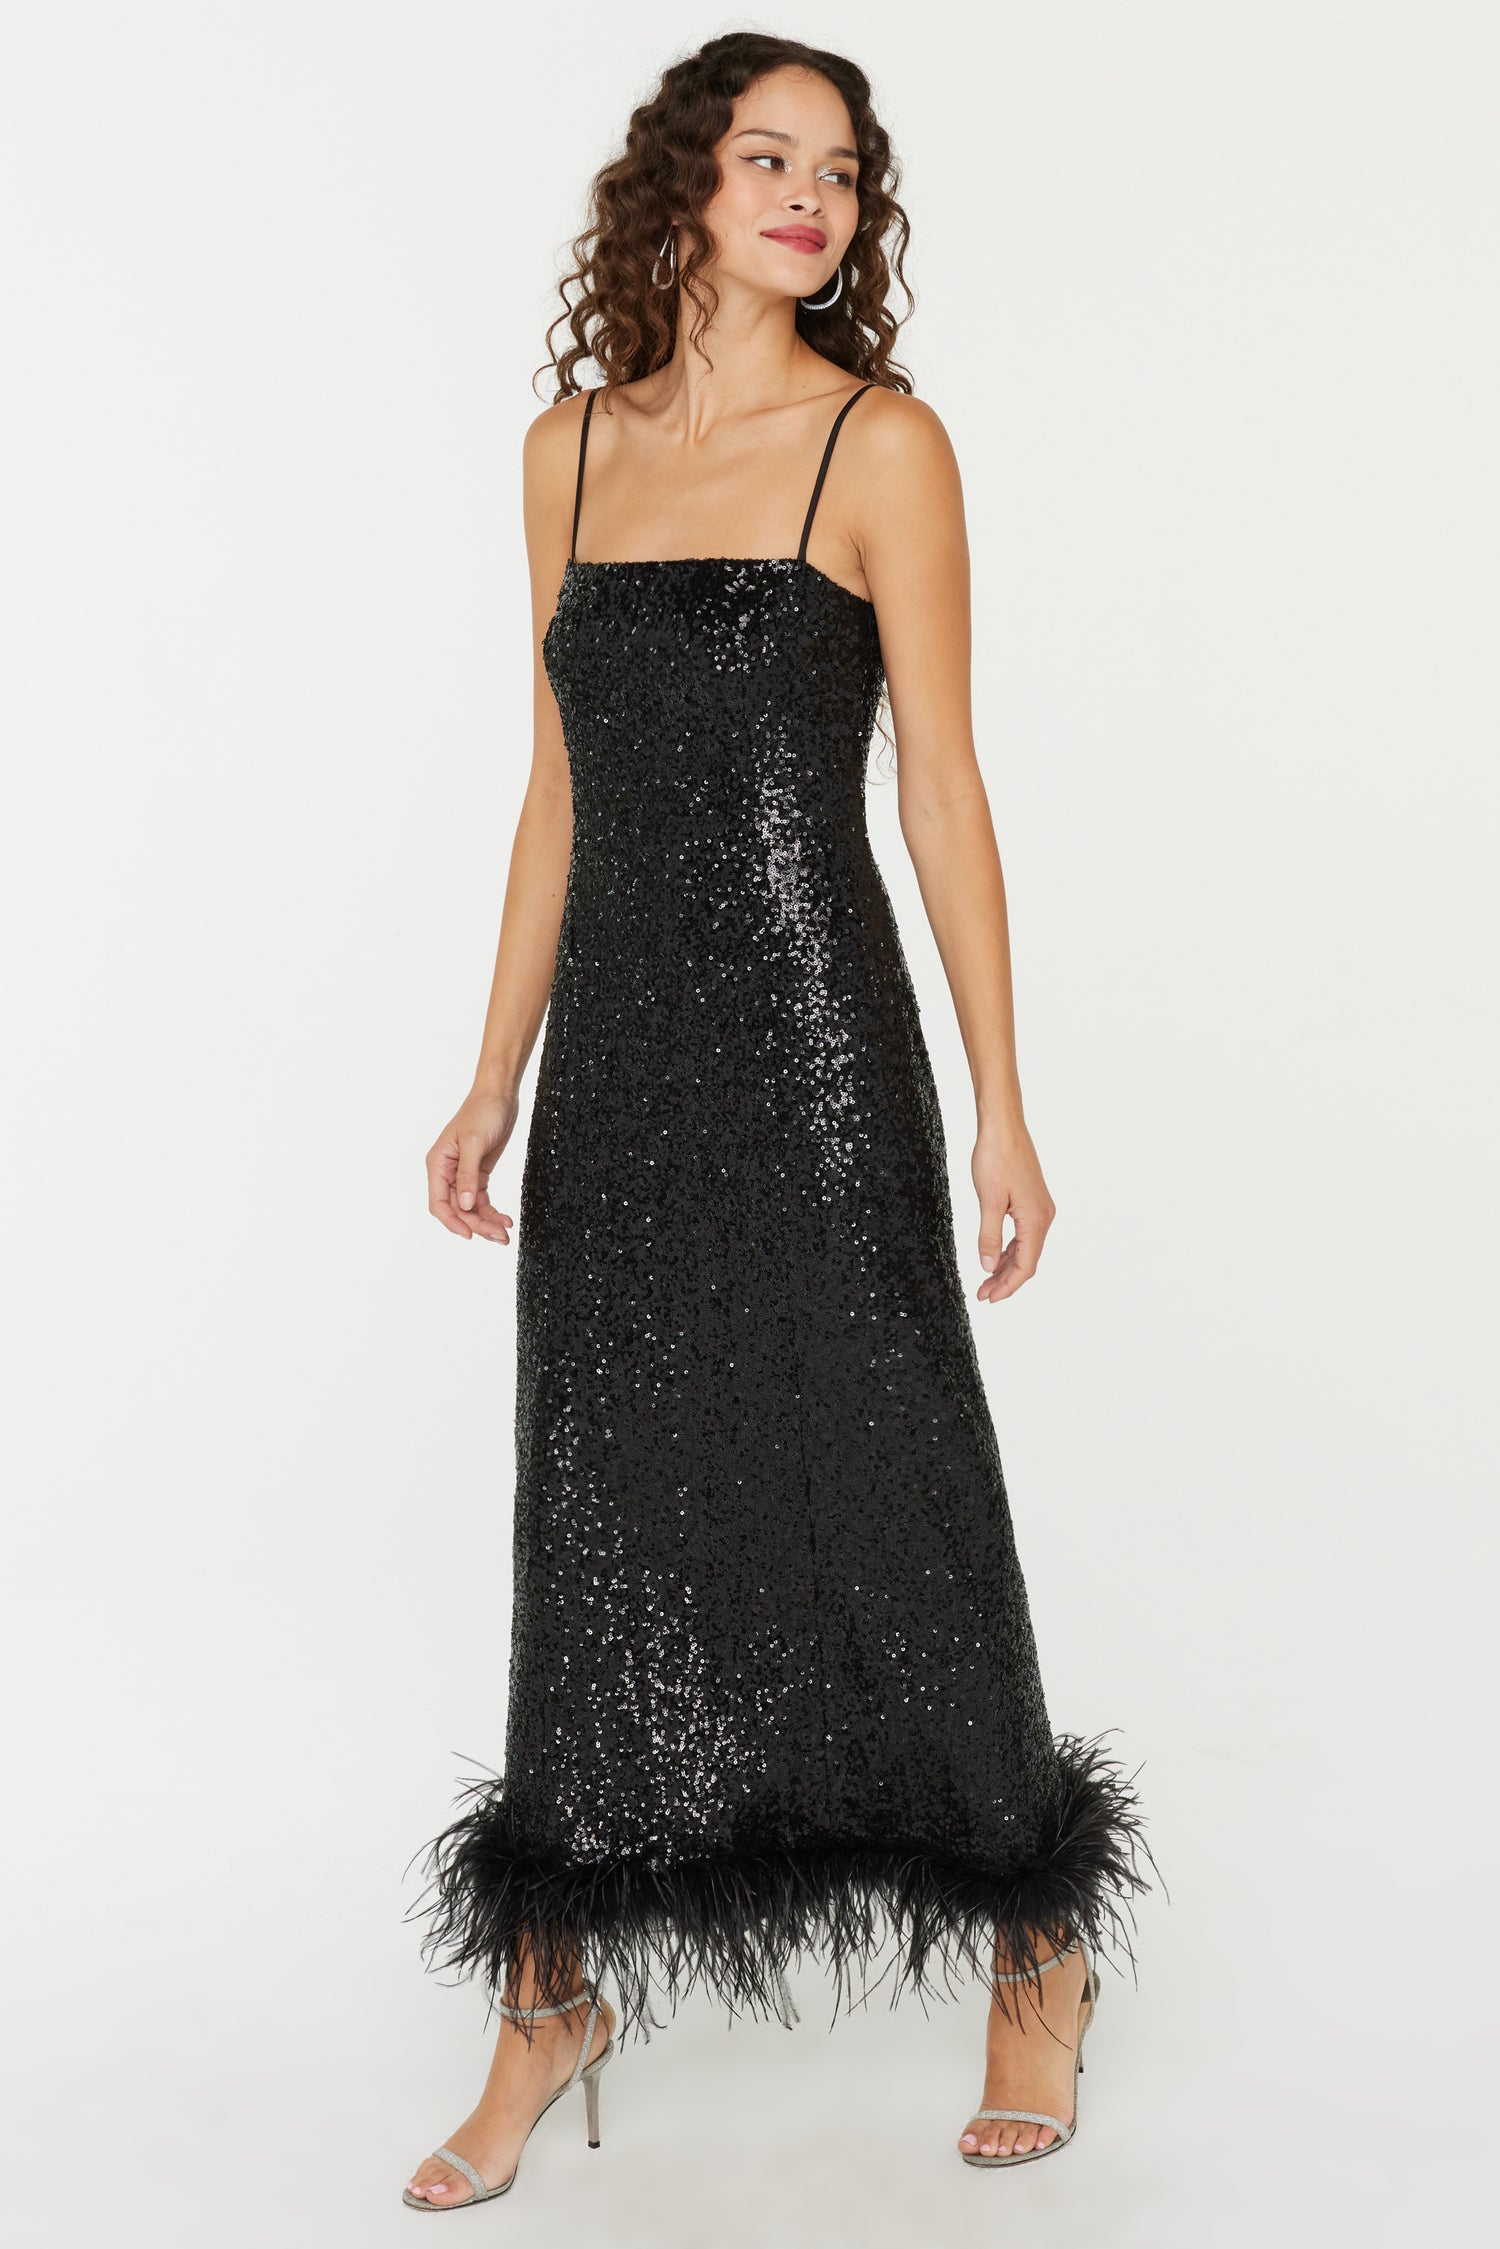 Cora Dress - Black Sequin – HVN